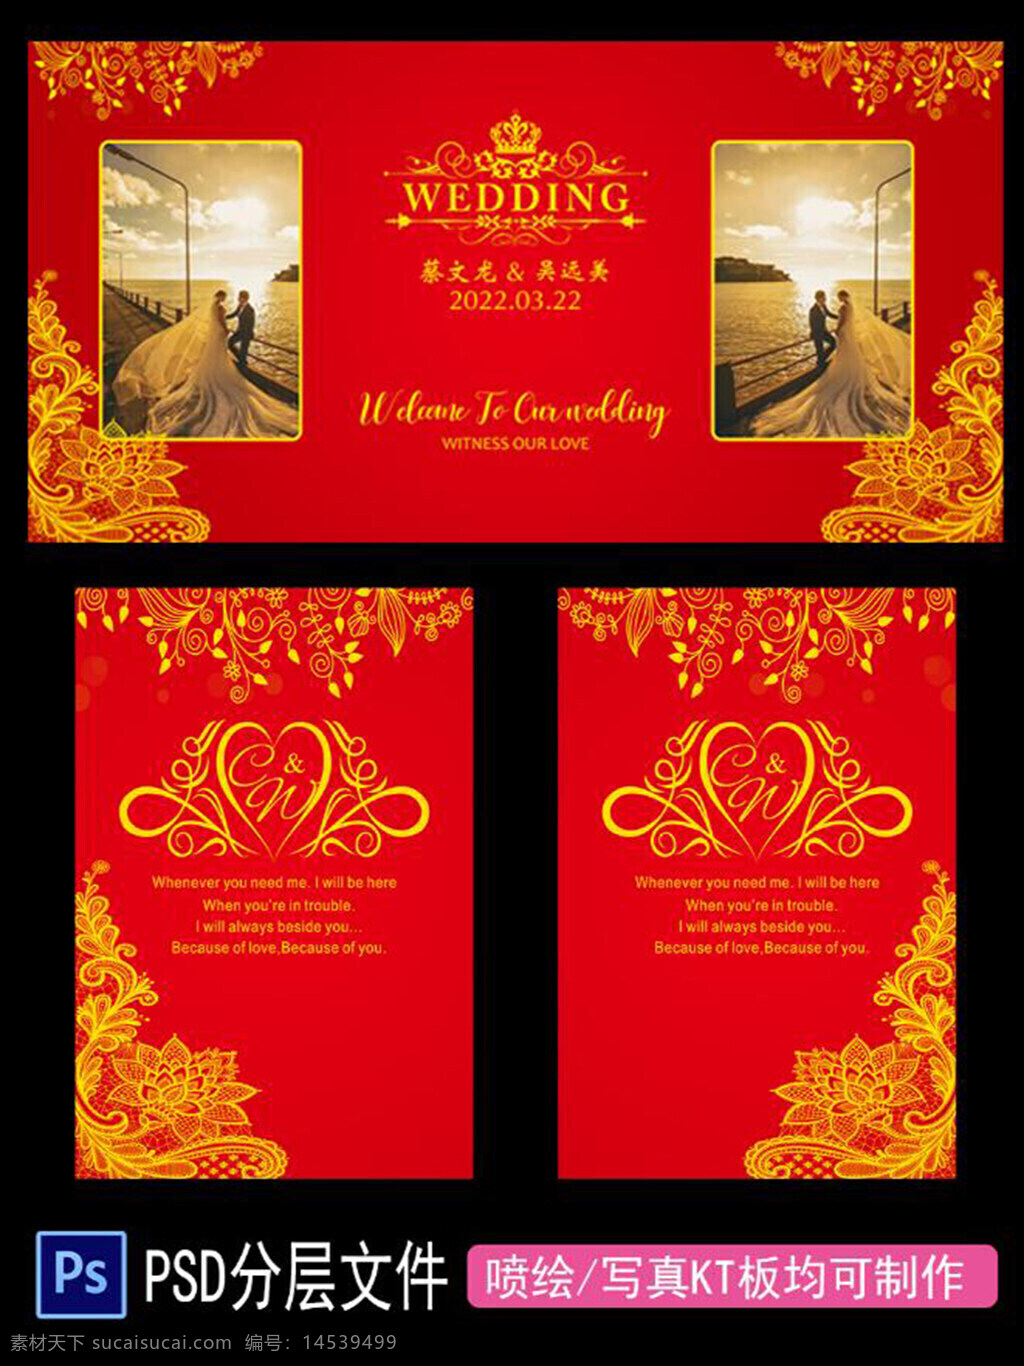 红色 婚礼背景 订婚背景 婚礼布置 结婚场景 订婚宴 签到 海报 简易布置 婚庆背景 设计 广告设计